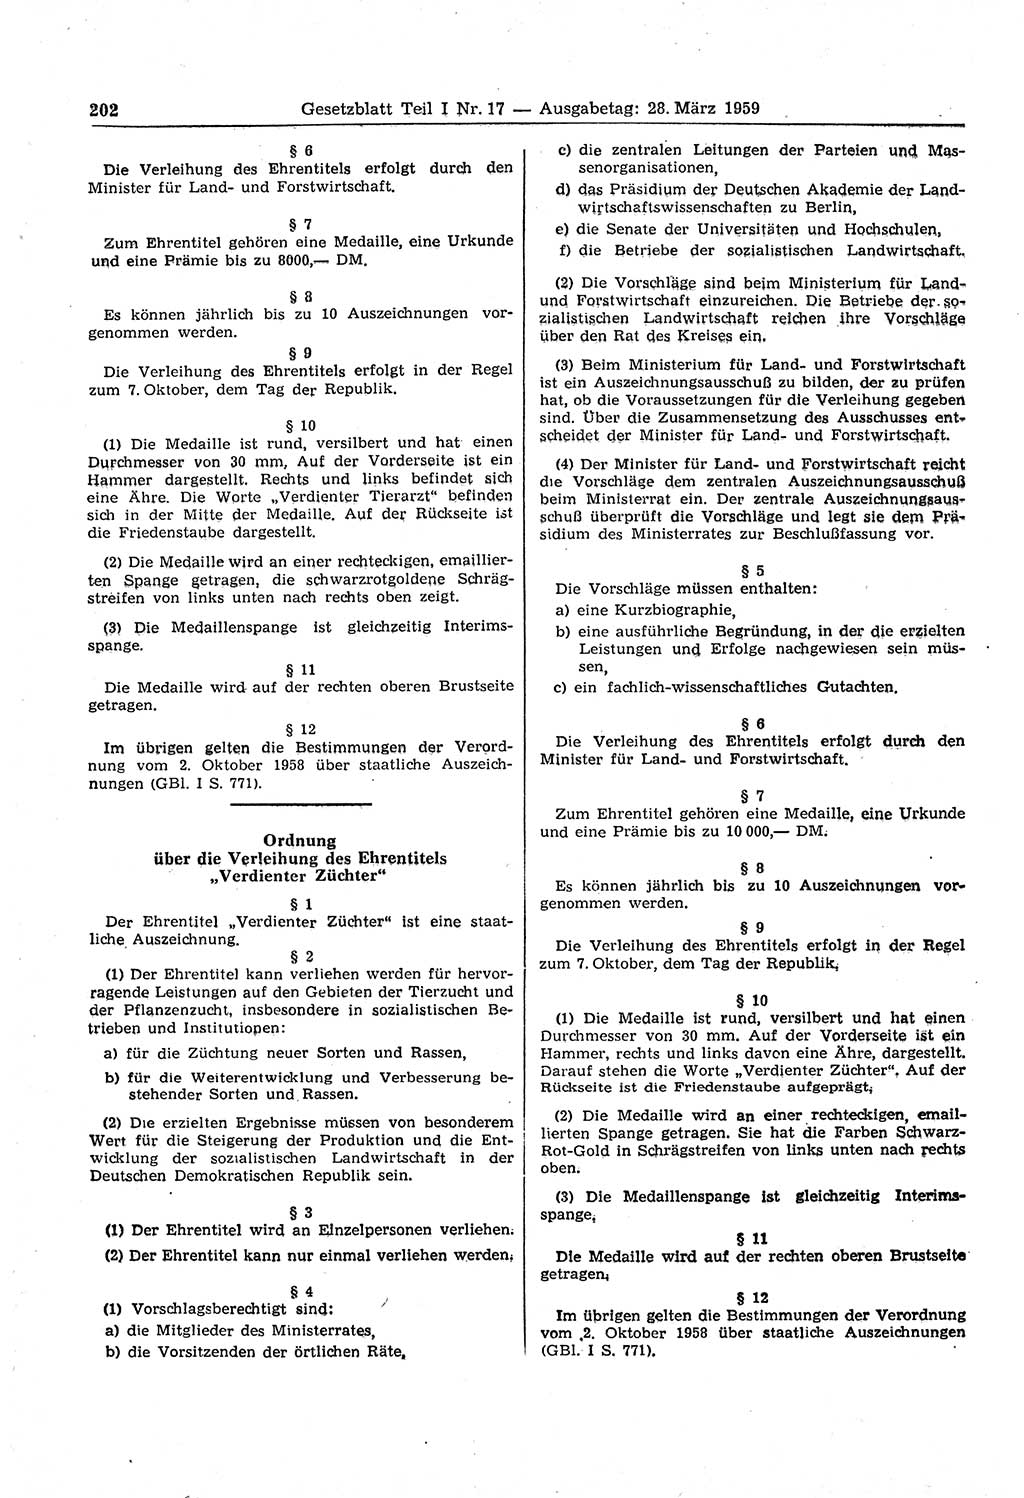 Gesetzblatt (GBl.) der Deutschen Demokratischen Republik (DDR) Teil Ⅰ 1959, Seite 202 (GBl. DDR Ⅰ 1959, S. 202)